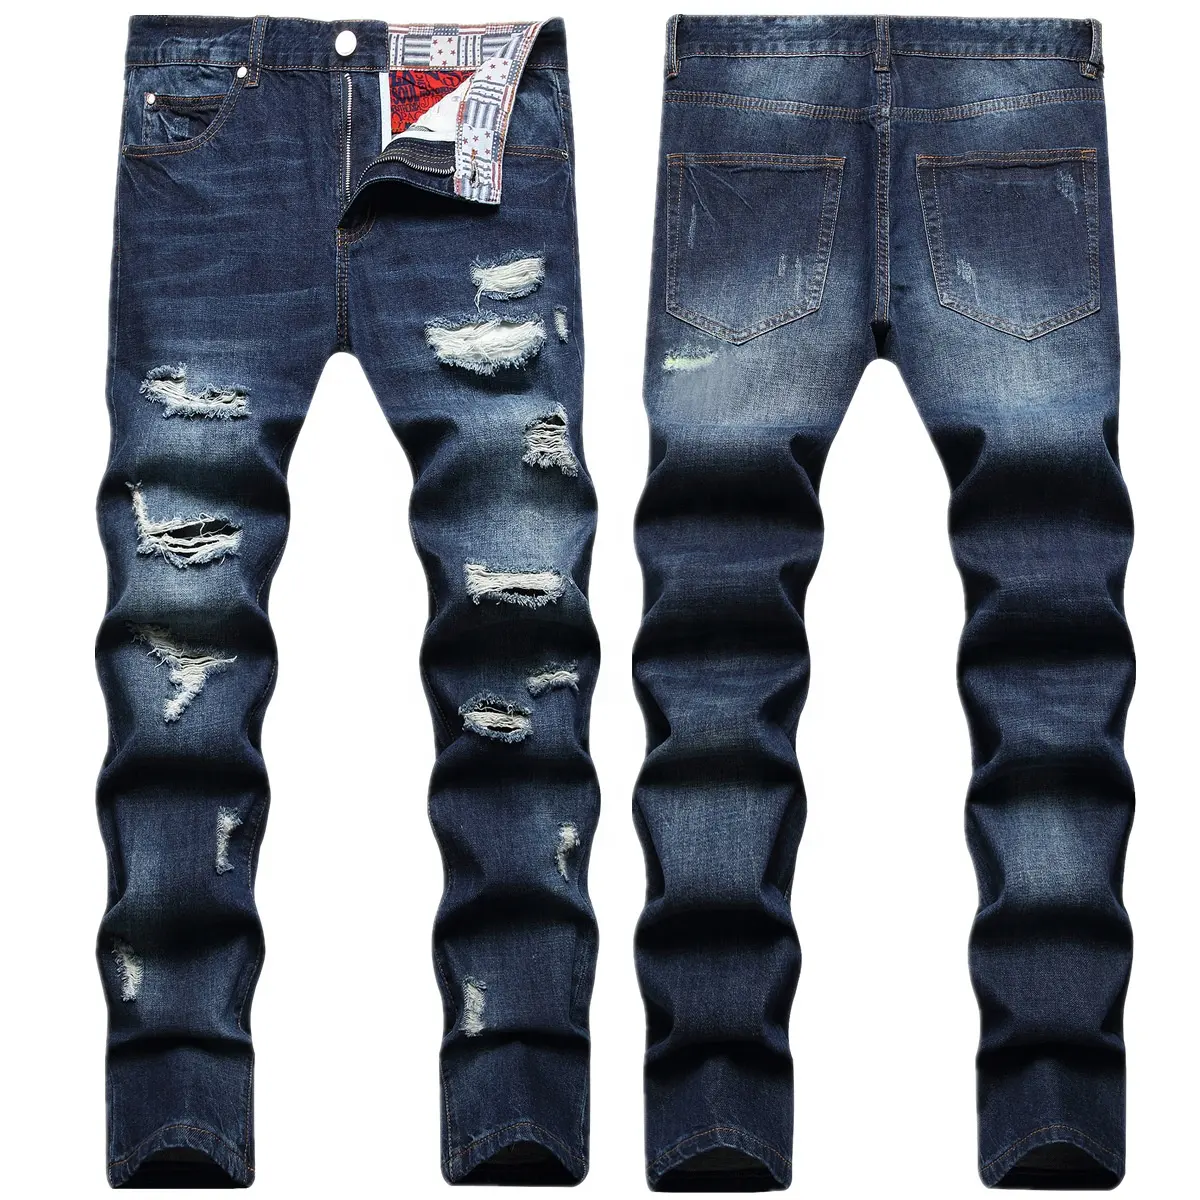 Prezzo all'ingrosso nuovi stili demin jeans In stock famoso designer di marca Trend denim pantaloni strappati pantalone